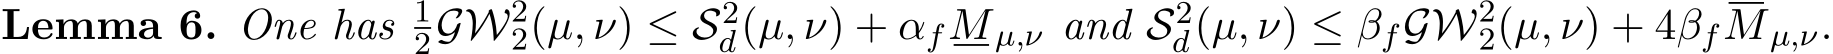 Lemma 6. One has 12GW22(µ, ν) ≤ S2d(µ, ν) + αfMµ,ν and S2d(µ, ν) ≤ βfGW22(µ, ν) + 4βfMµ,ν.